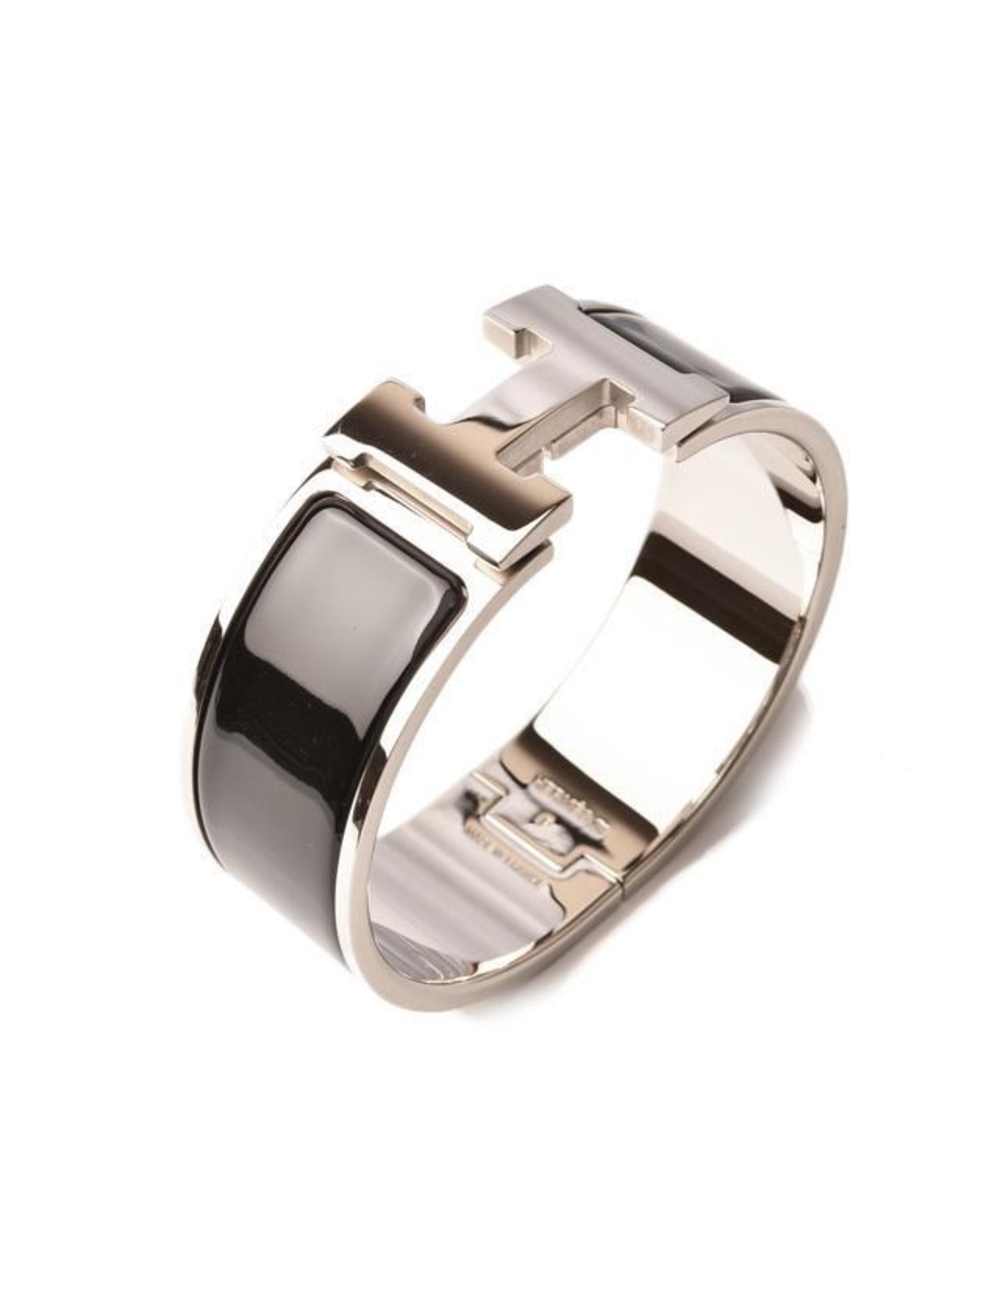 很好 這是愛馬仕（Hermes）的時尚手鍊，既經典又現代。它是一條拋光的銀質錶帶，一側具有鉸鏈，並在突出側打開了可旋轉的愛馬仕